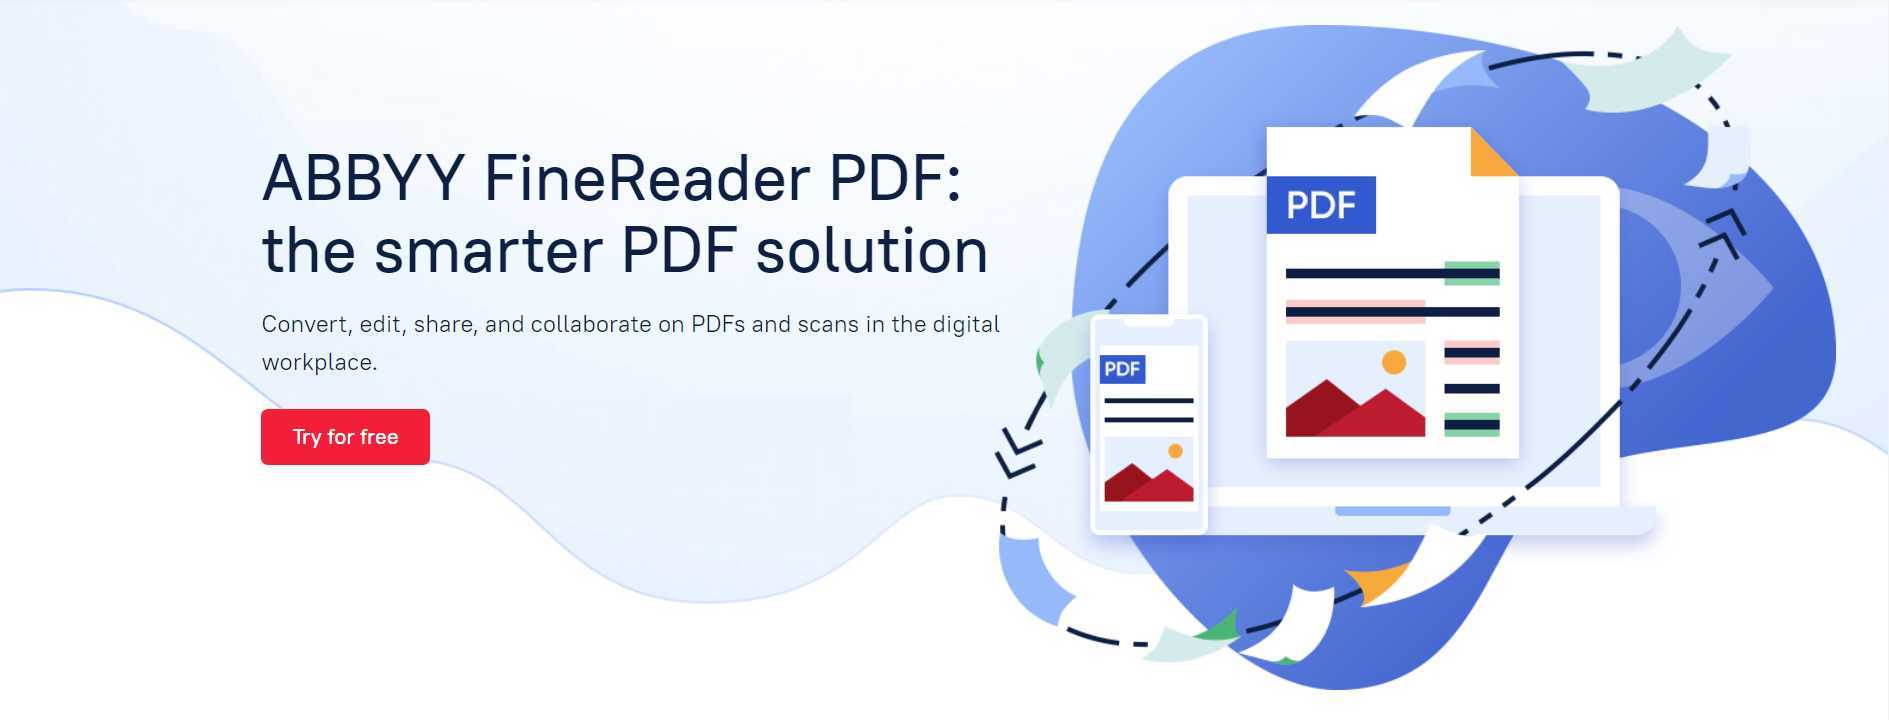 adobe finereader pdf product image